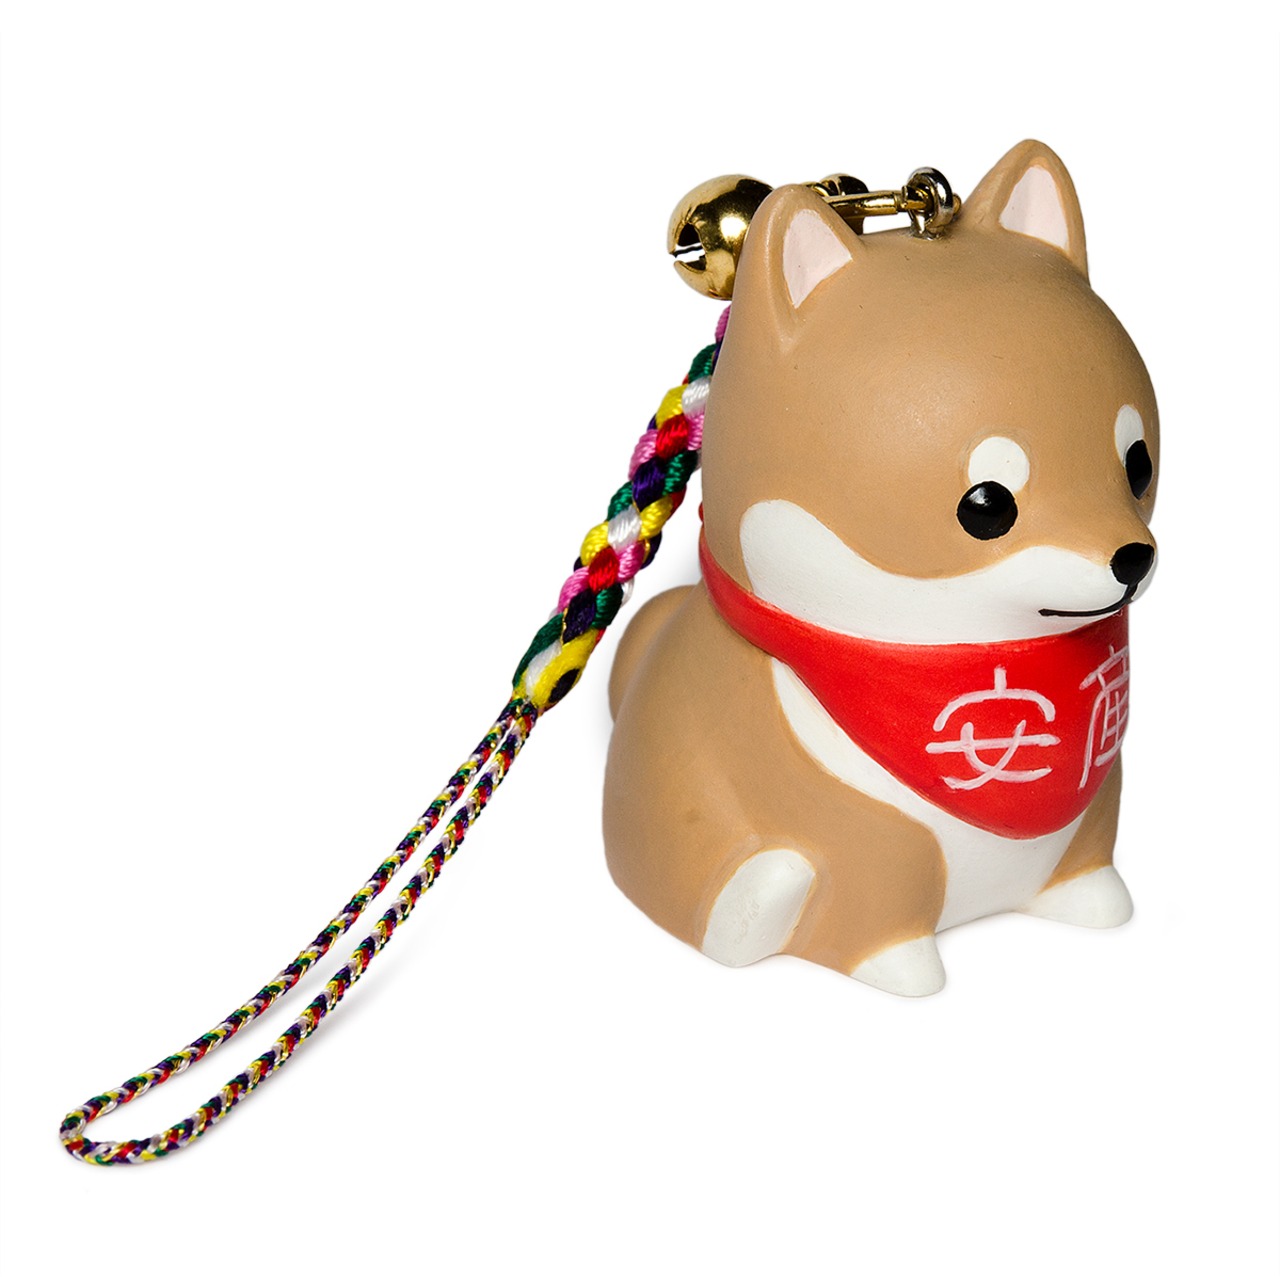 安産犬  「コウノドリ」ロゴ入りBOX TB-1001